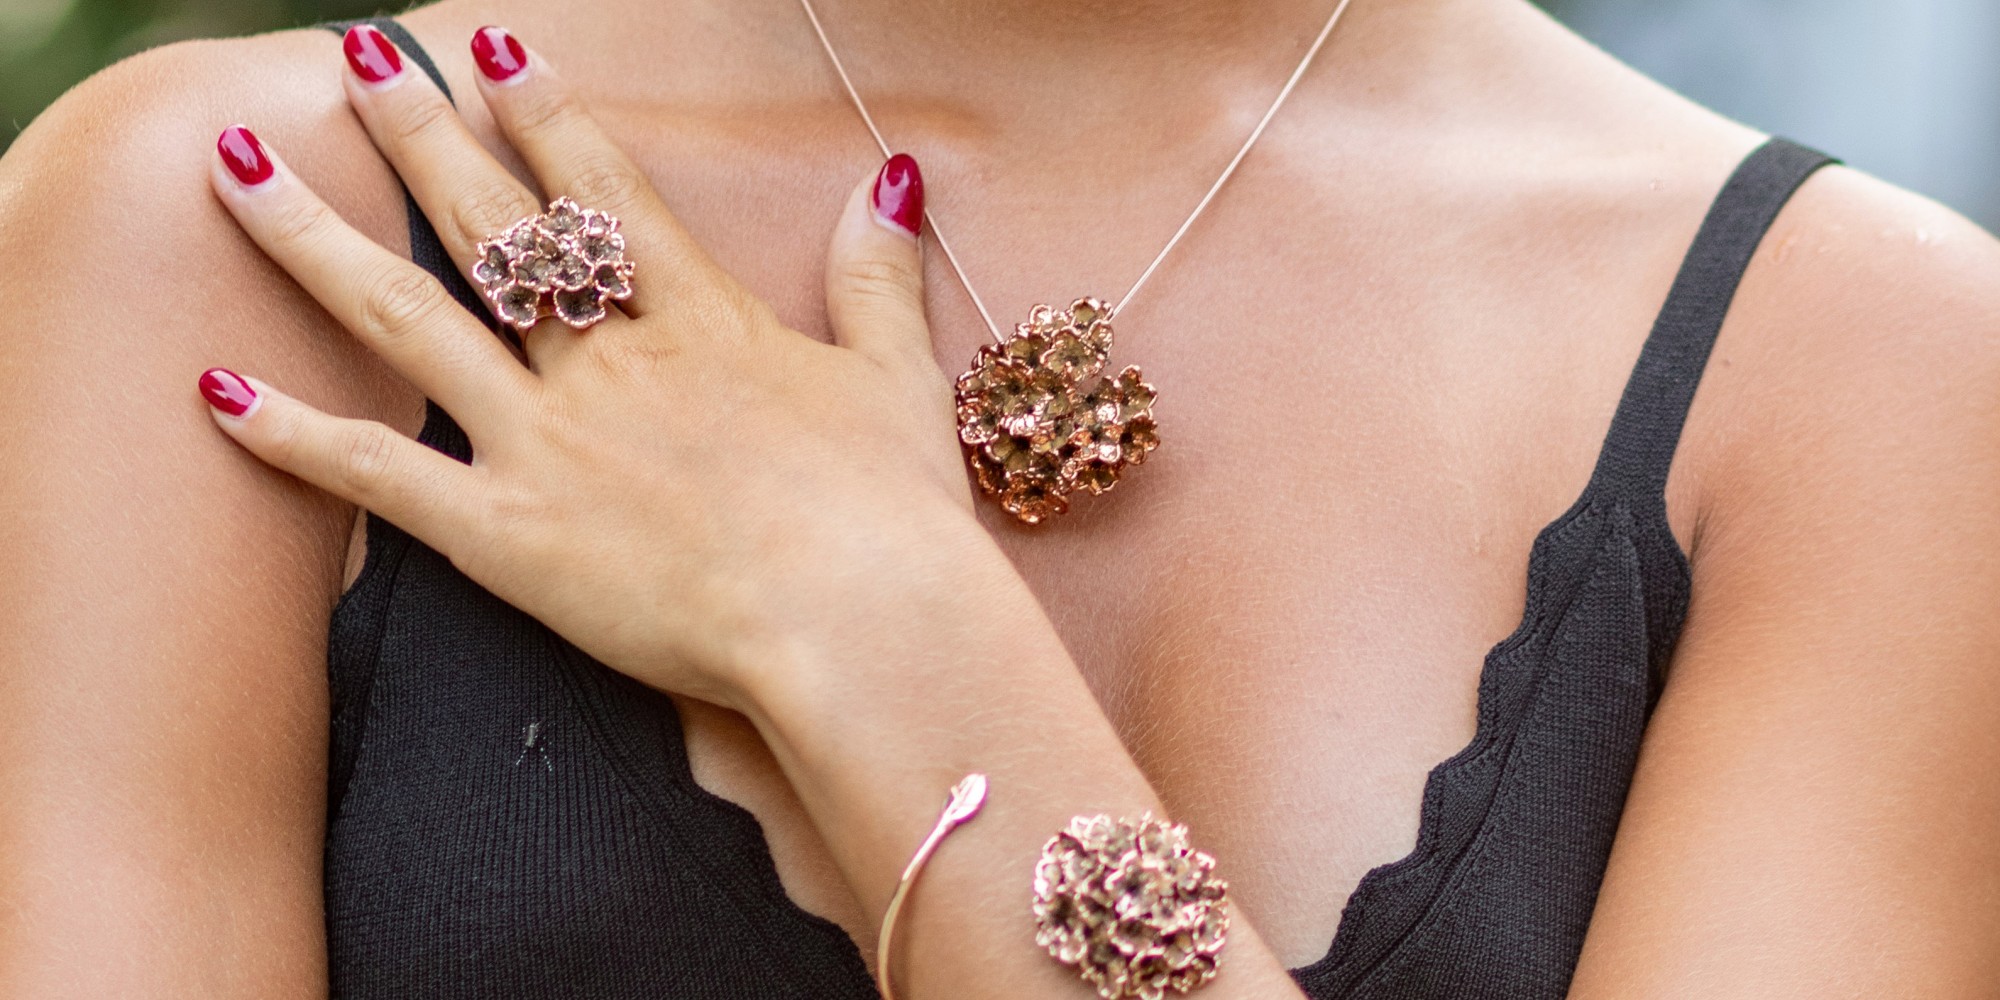 la modella indossa una parure composta da ciondolo, anello e bracciale fiori del biancospino double face; un lato naturale e l'altro placcato oro rosa